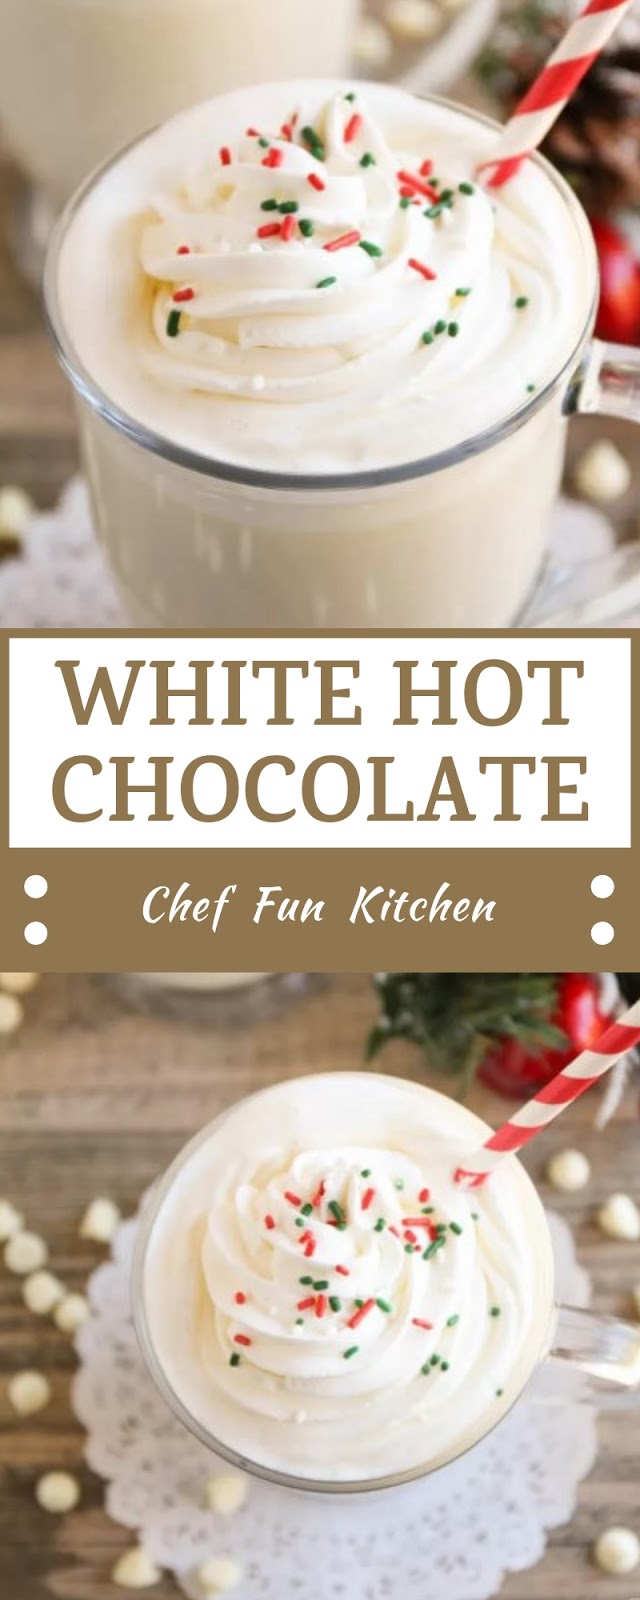 WHITE HOT CHOCOLATE